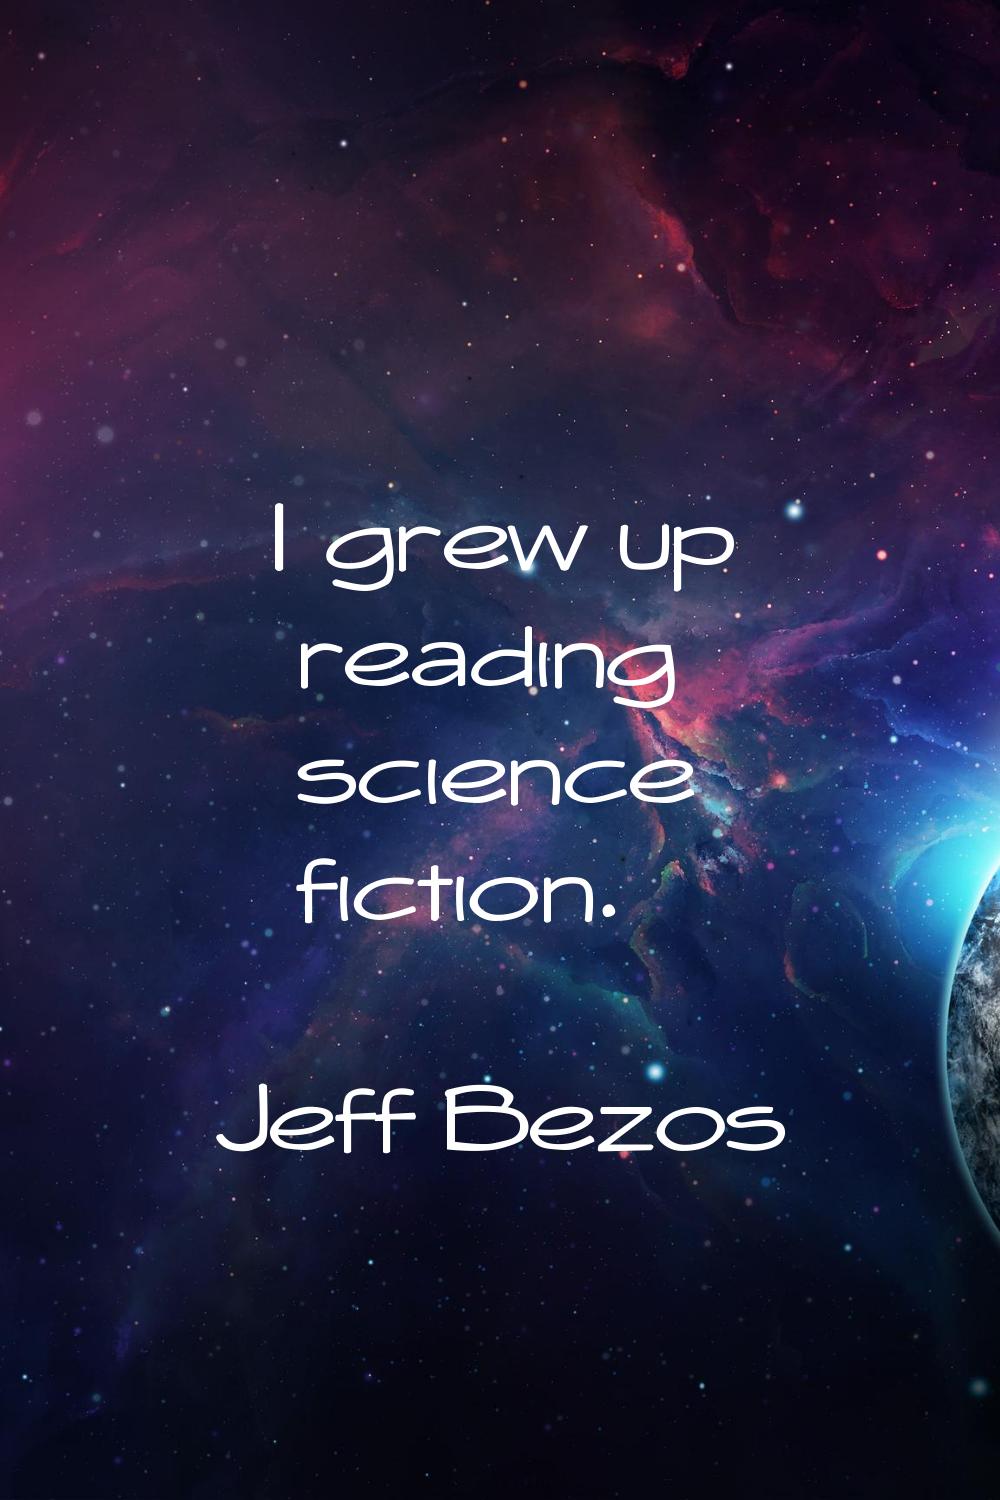 I grew up reading science fiction.